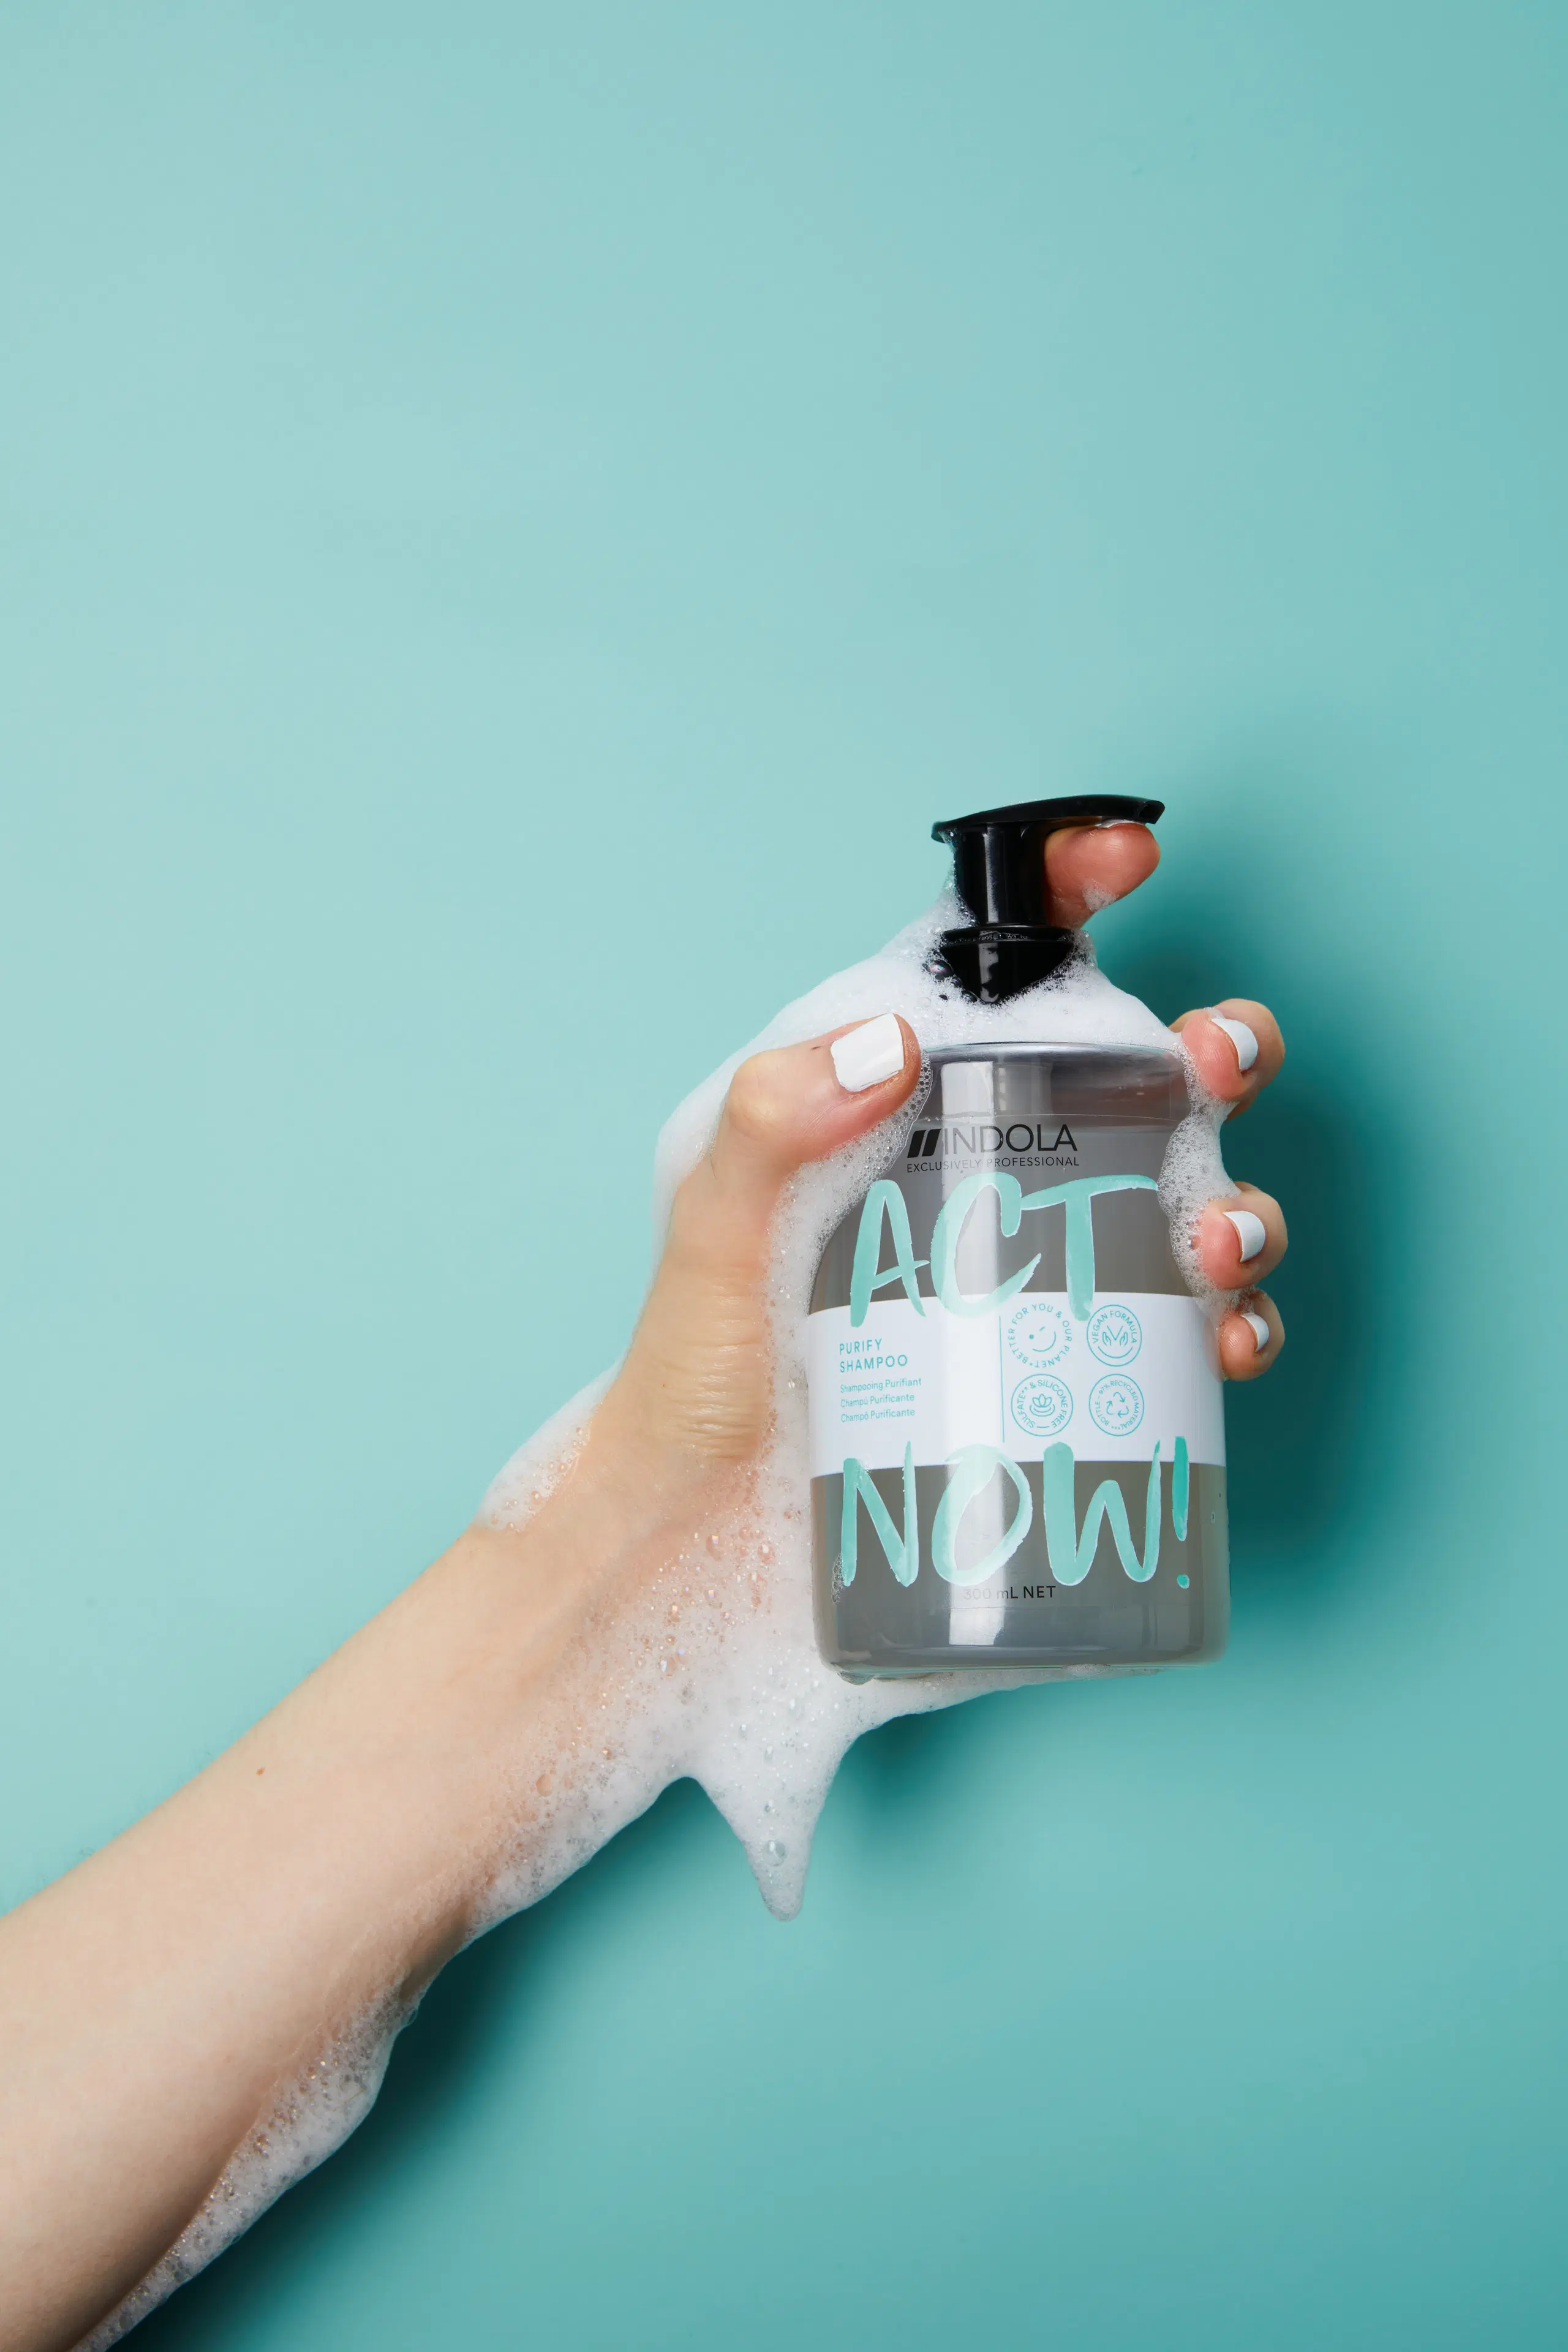 Indola ACT NOW! Purifying Shampoo 300 ml